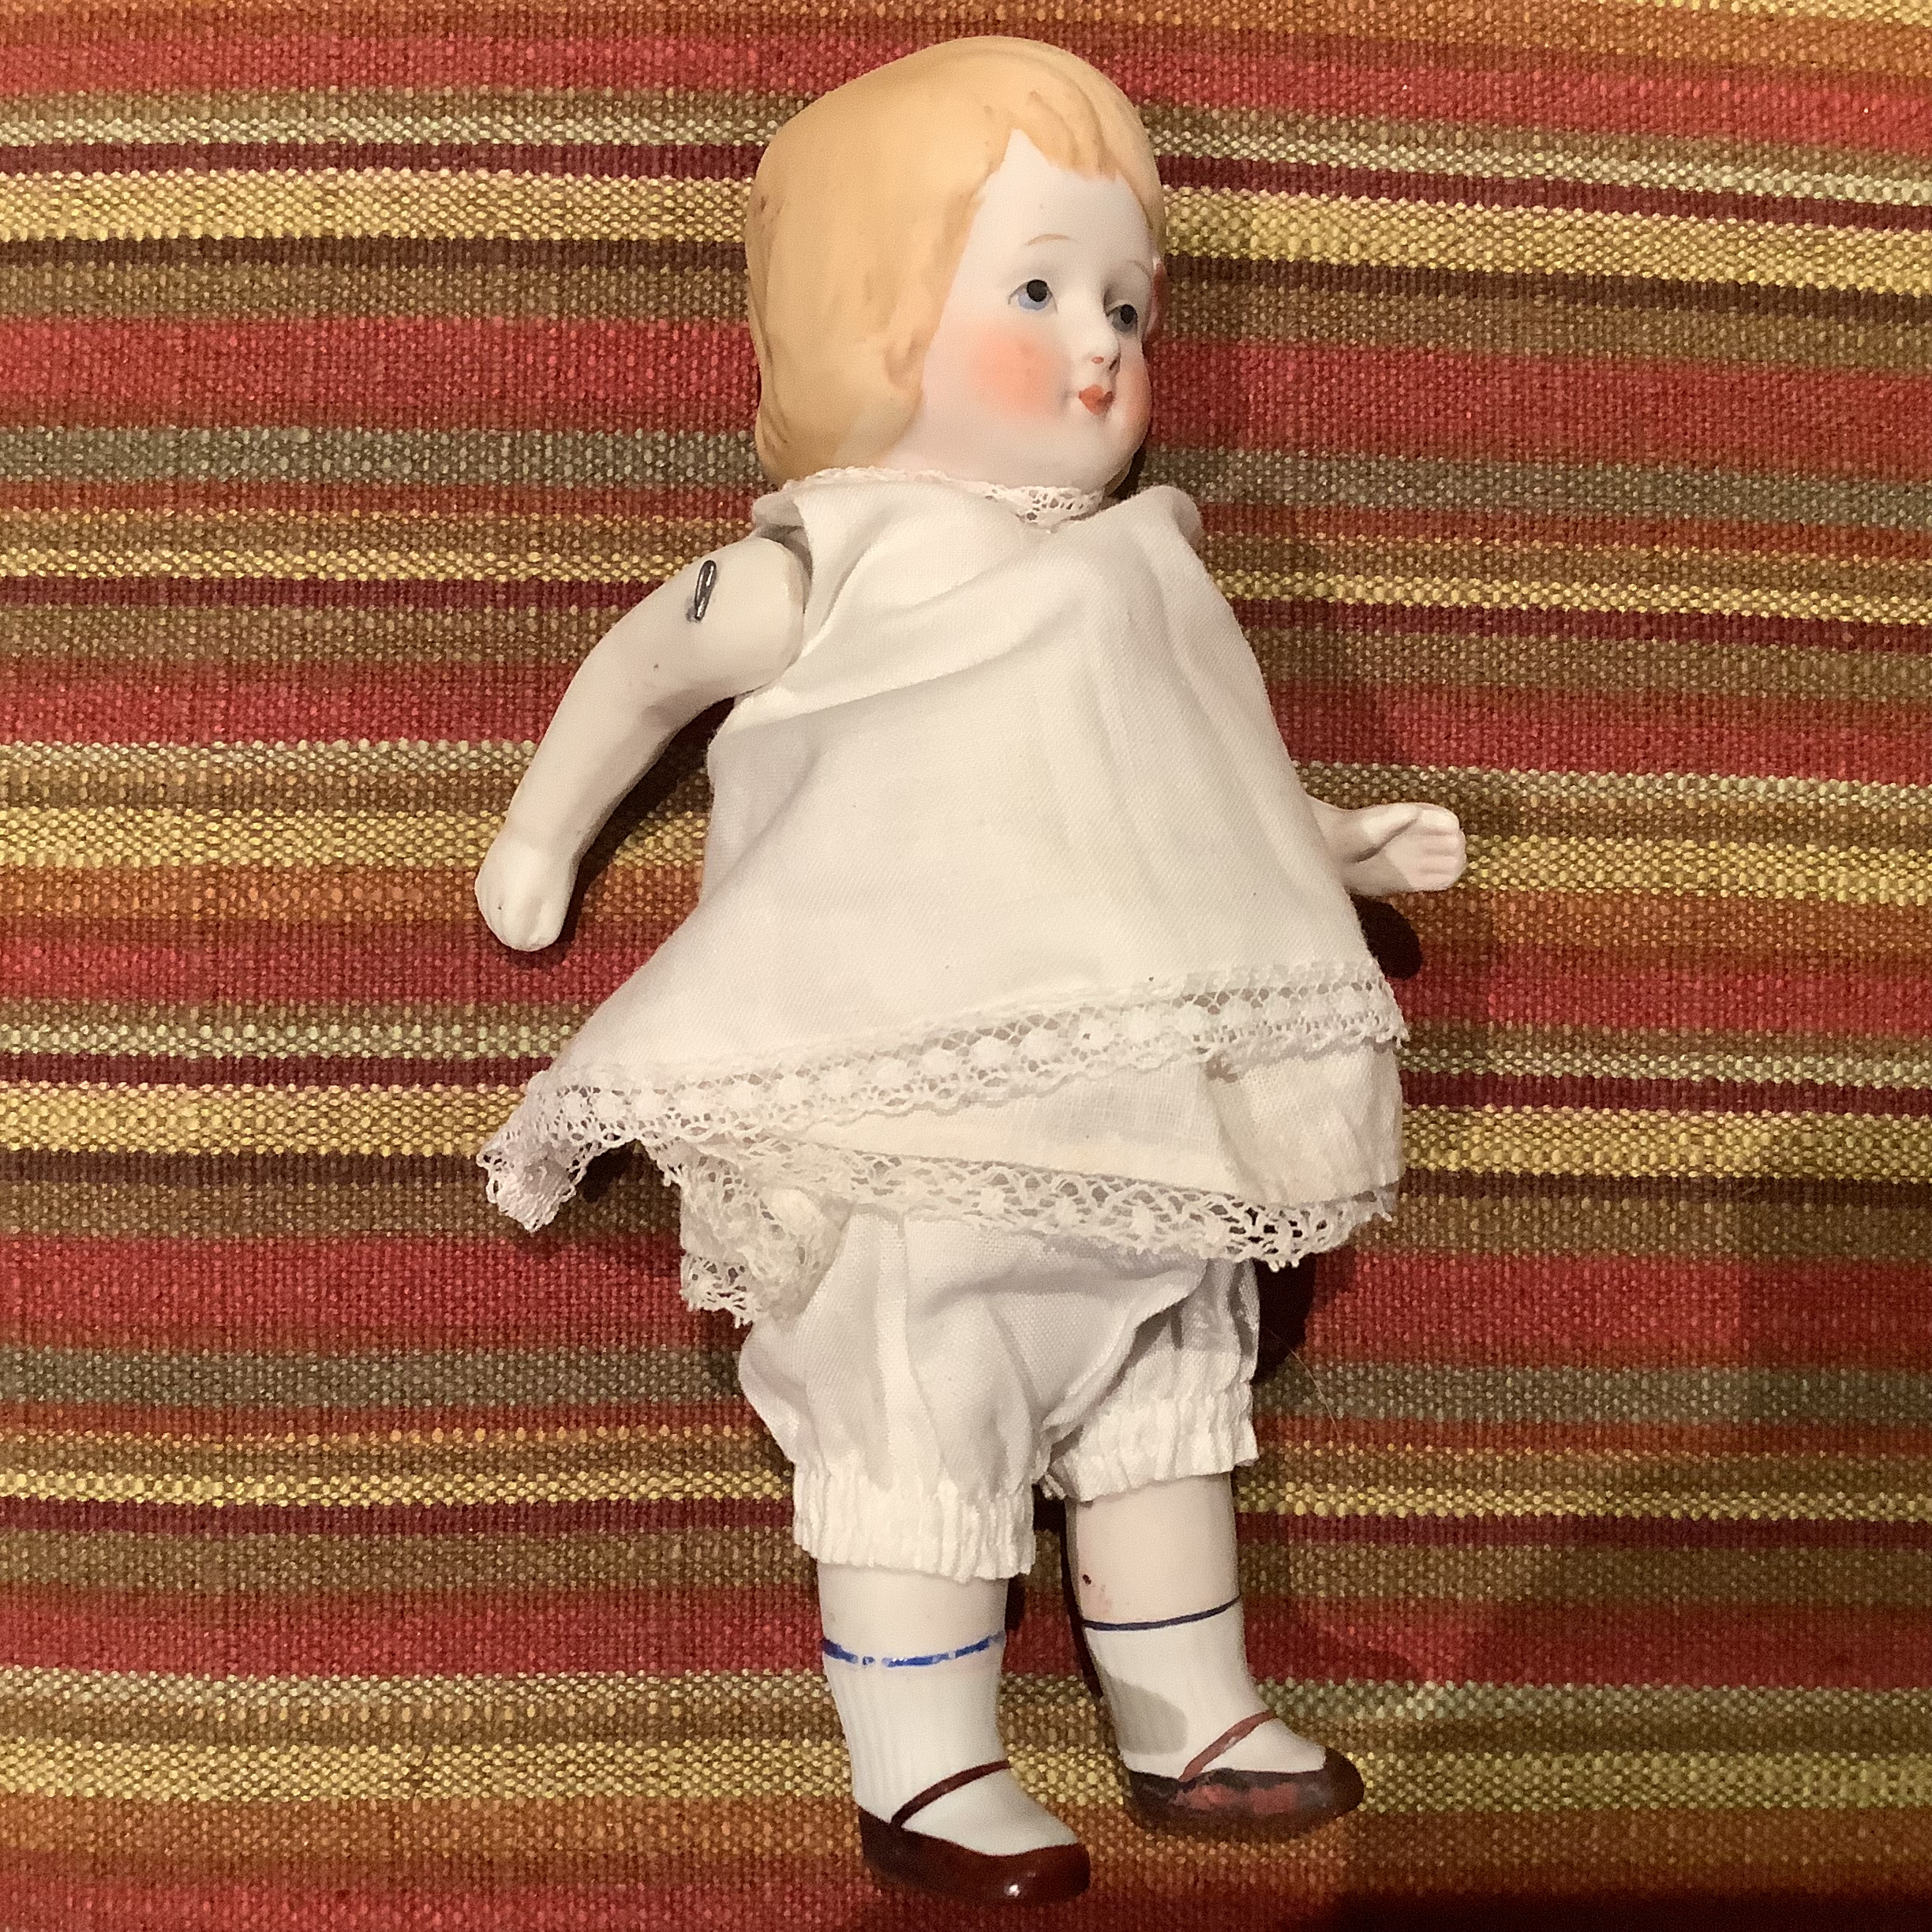 Vintage girl doll